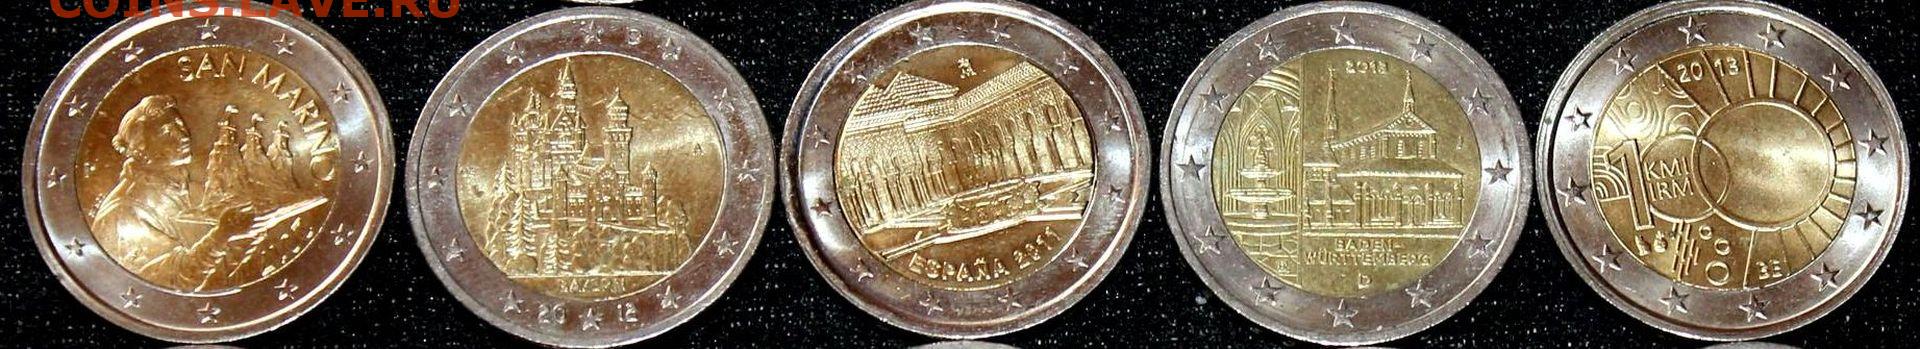 Юбилейная 5 индекс. Монеты евро. Монеты России. Монеты евро Австрии. Итальянский евро монета.